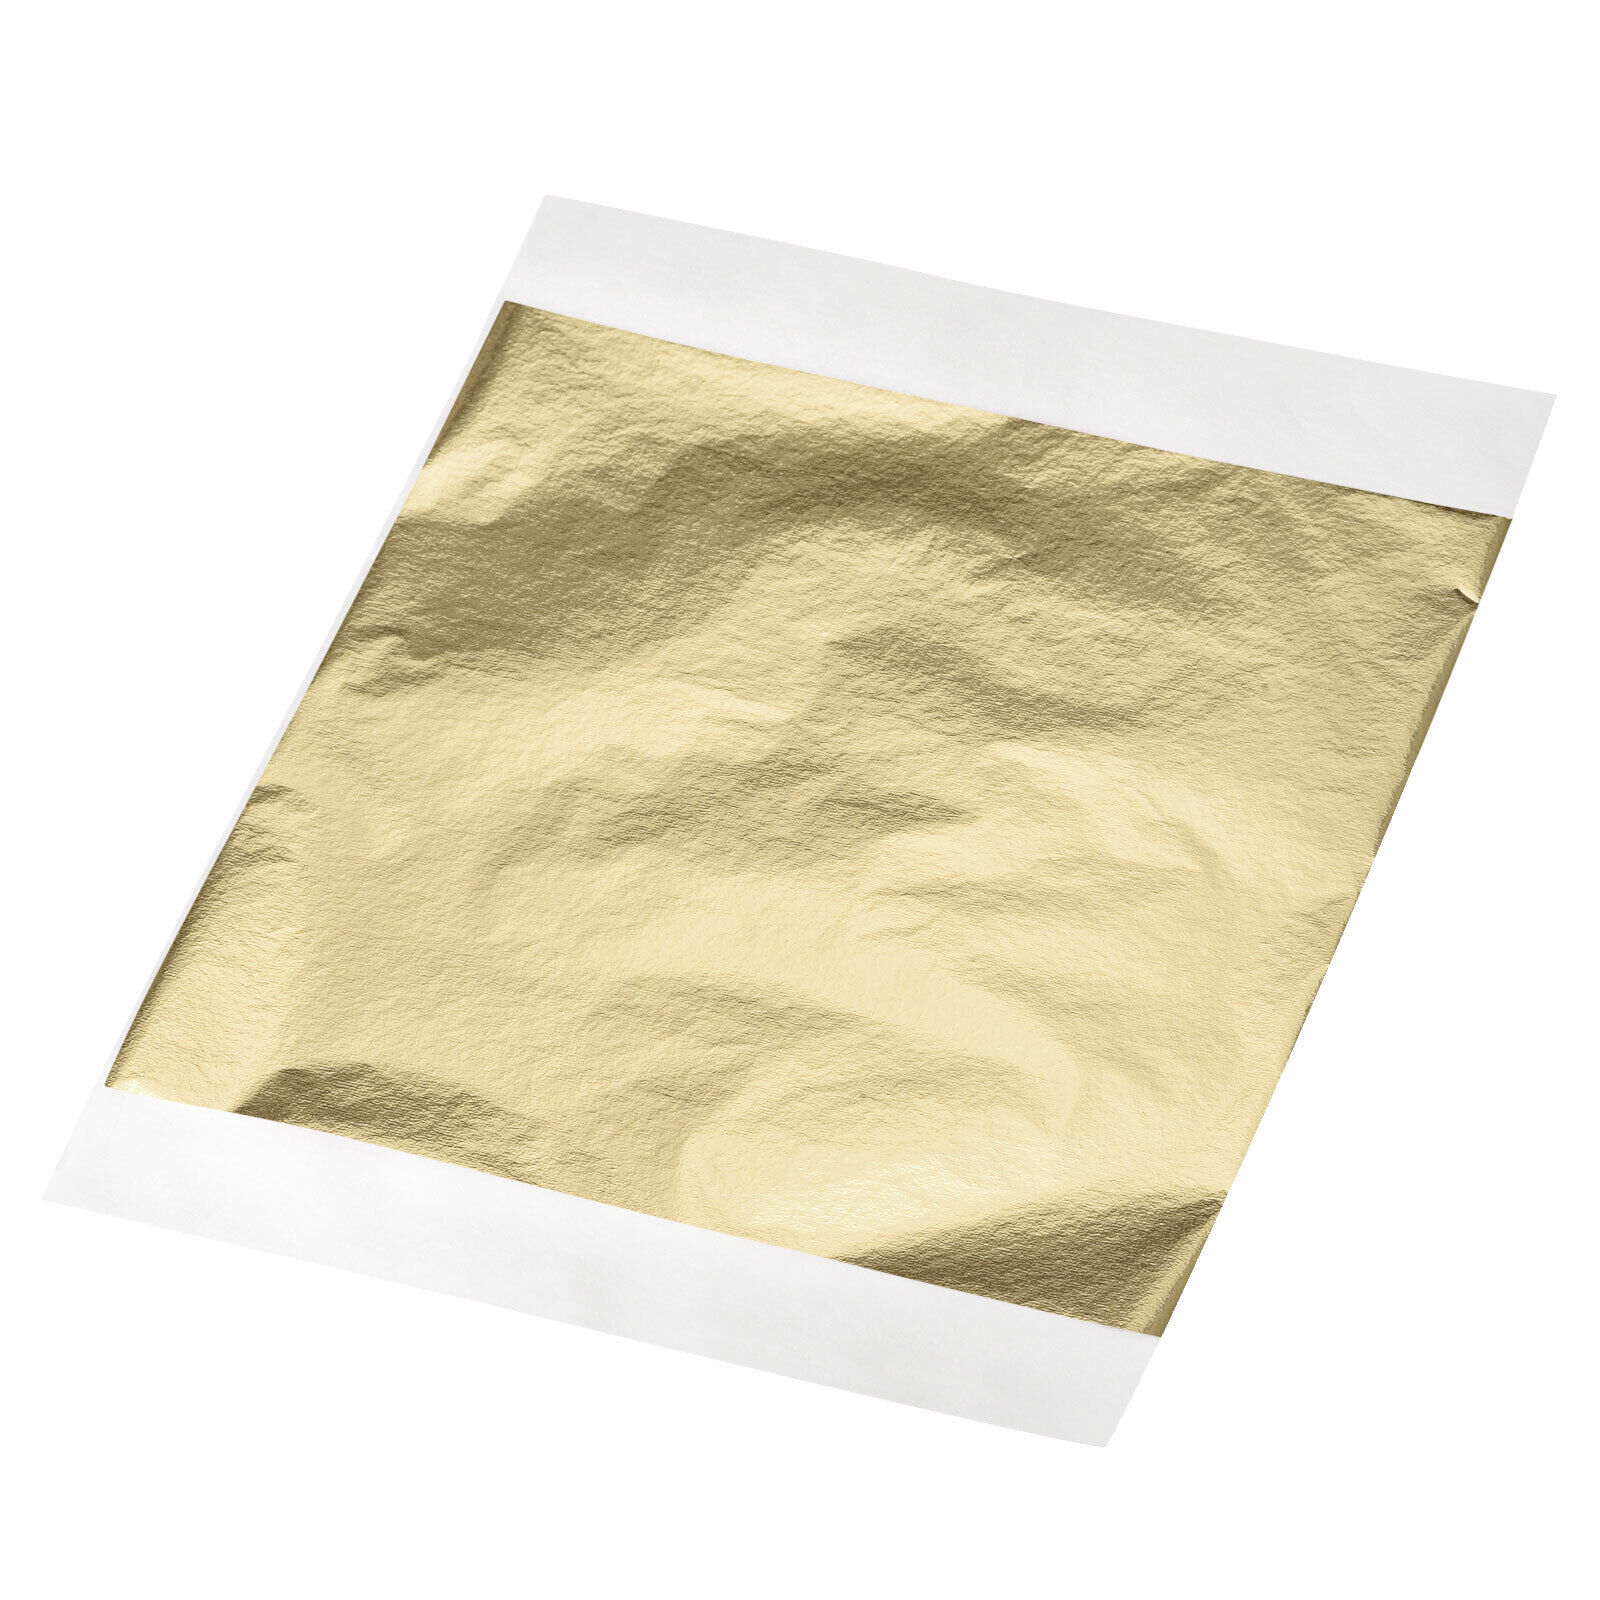 Foil Sheet, Light Golden Leaf Papers, 5.3 X 5.1inch For Art Decoration, 100pcs